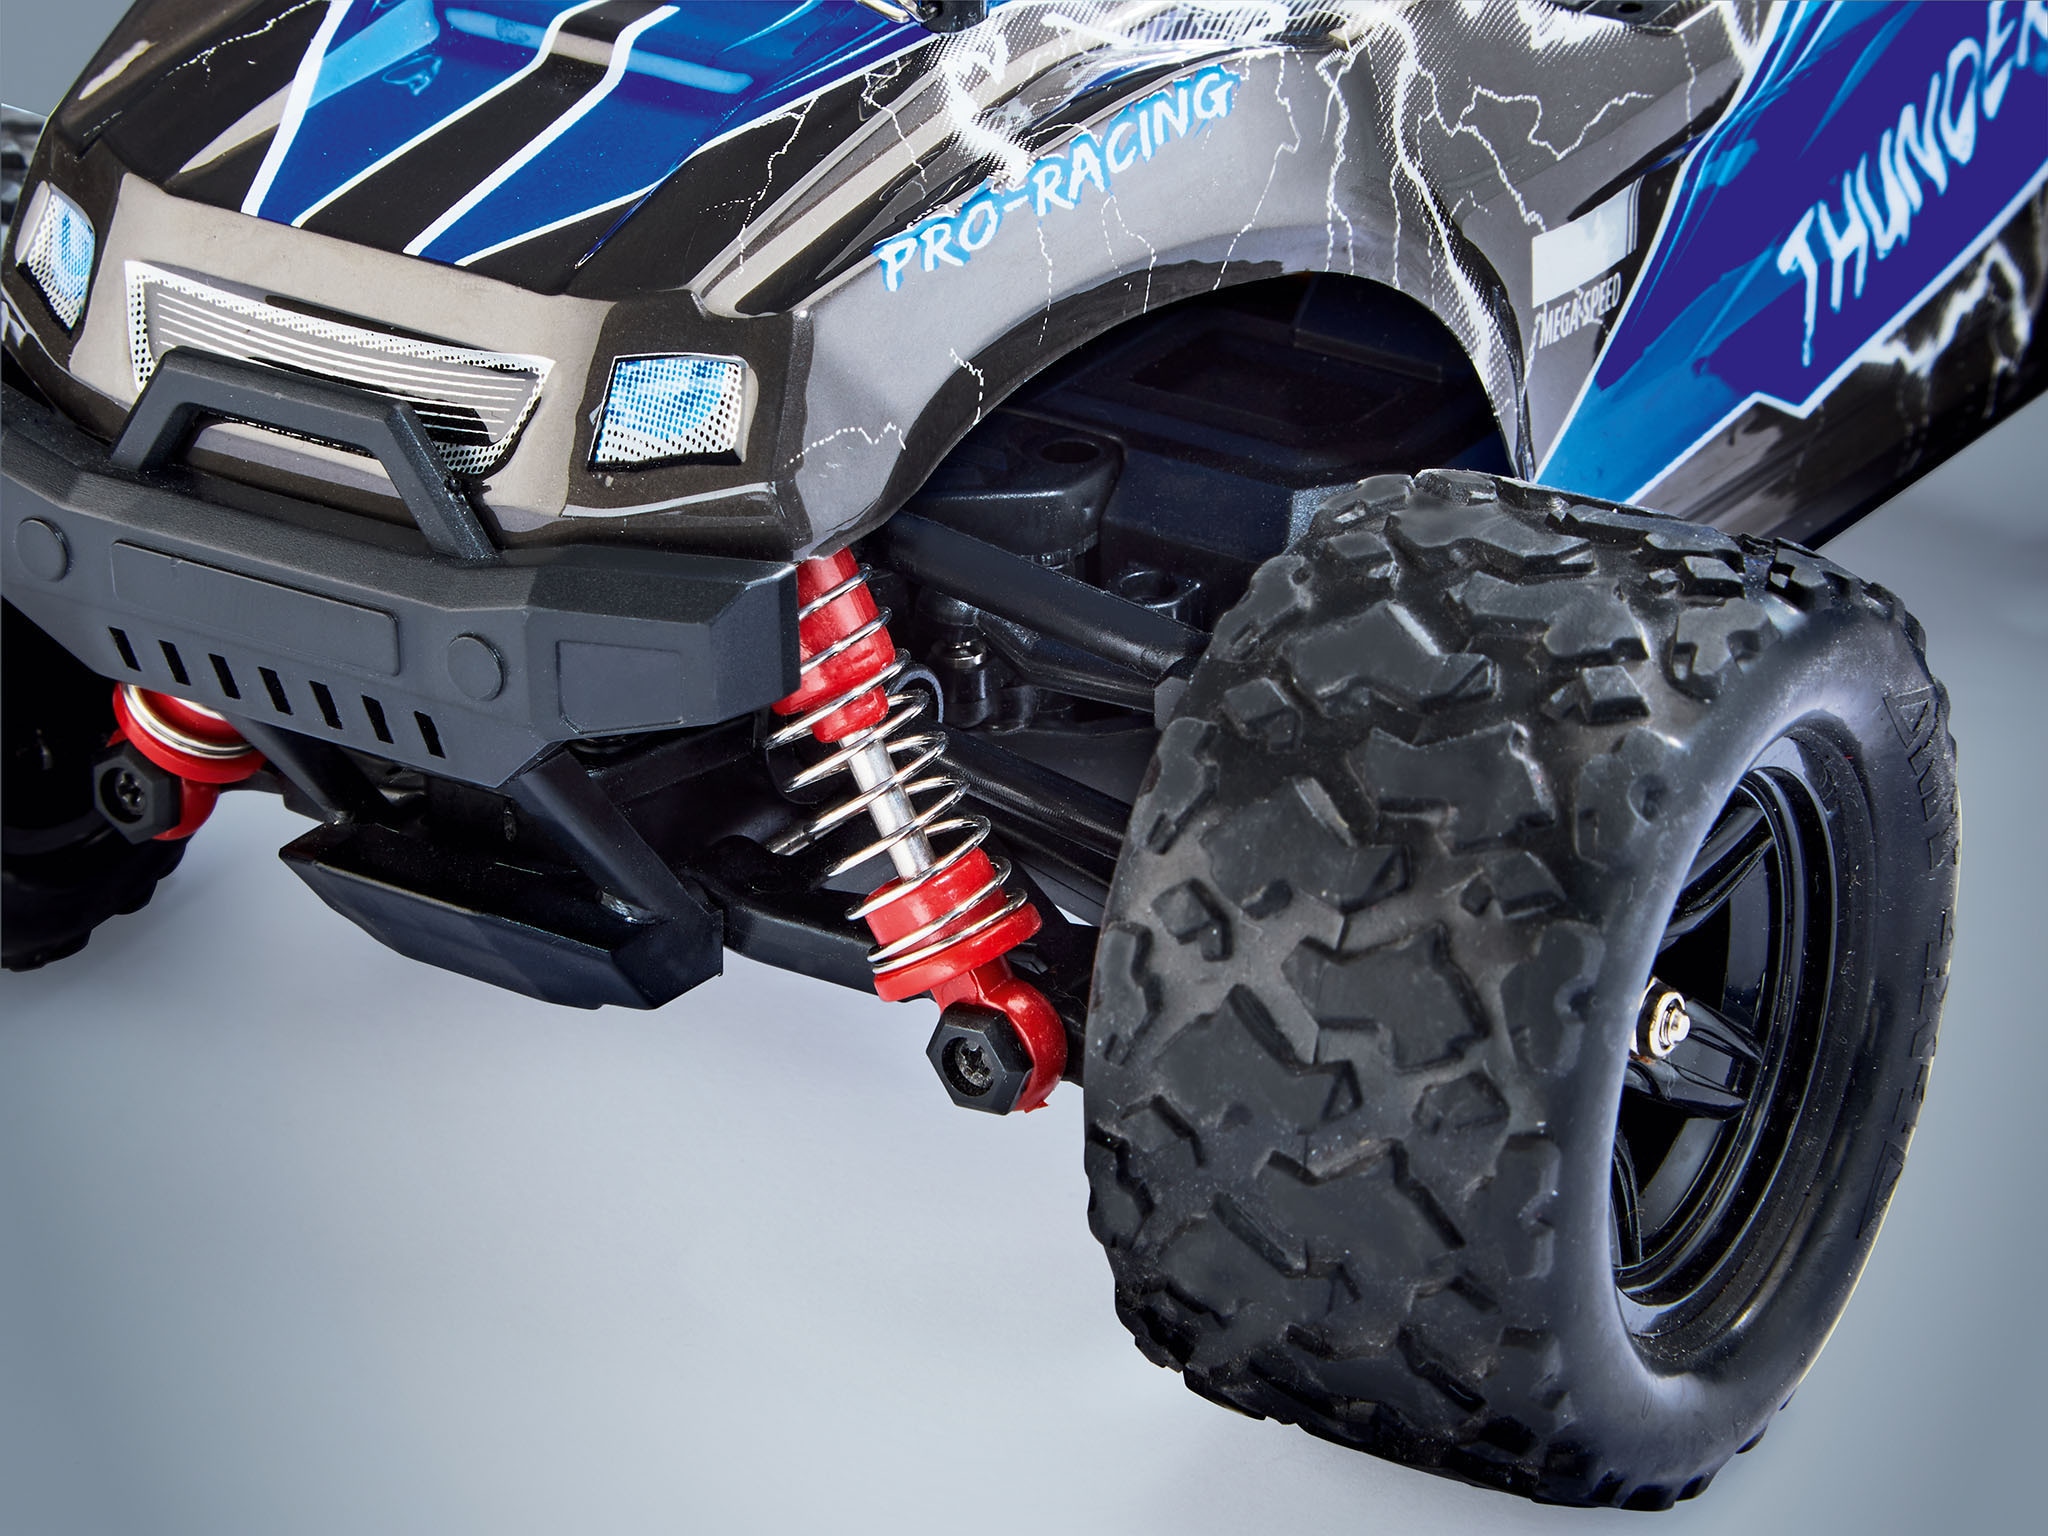 Revell® RC-Monstertruck »X-Treme Car CROSS Thunder«, Geschwindigkeit bis zu 50 km/h